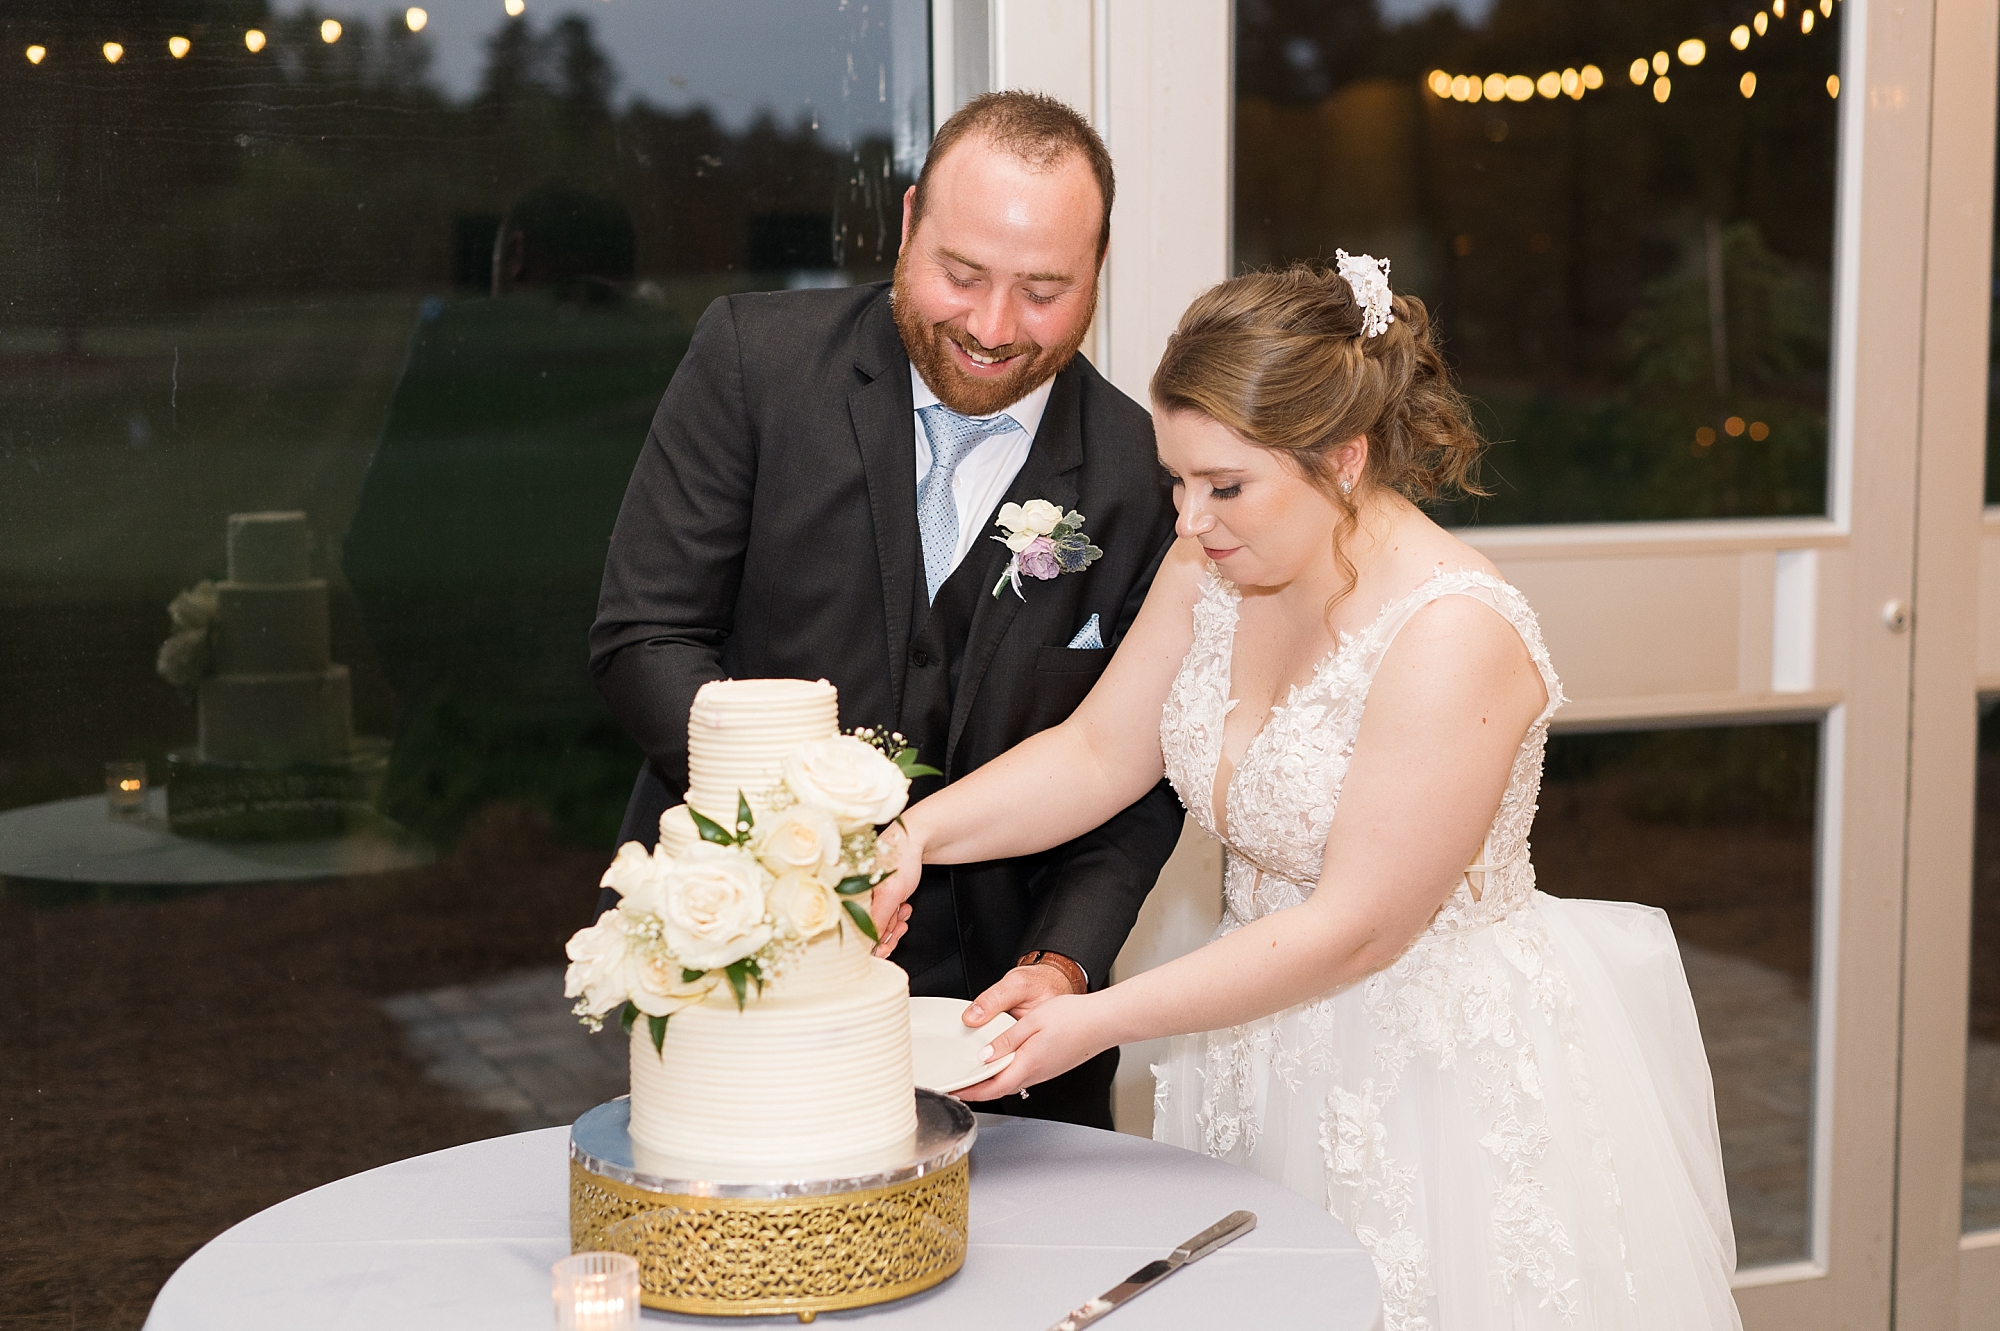 12 Oaks wedding cake cutting - Raleigh NC Wedding Photographer - Sarah Hinckley Photography